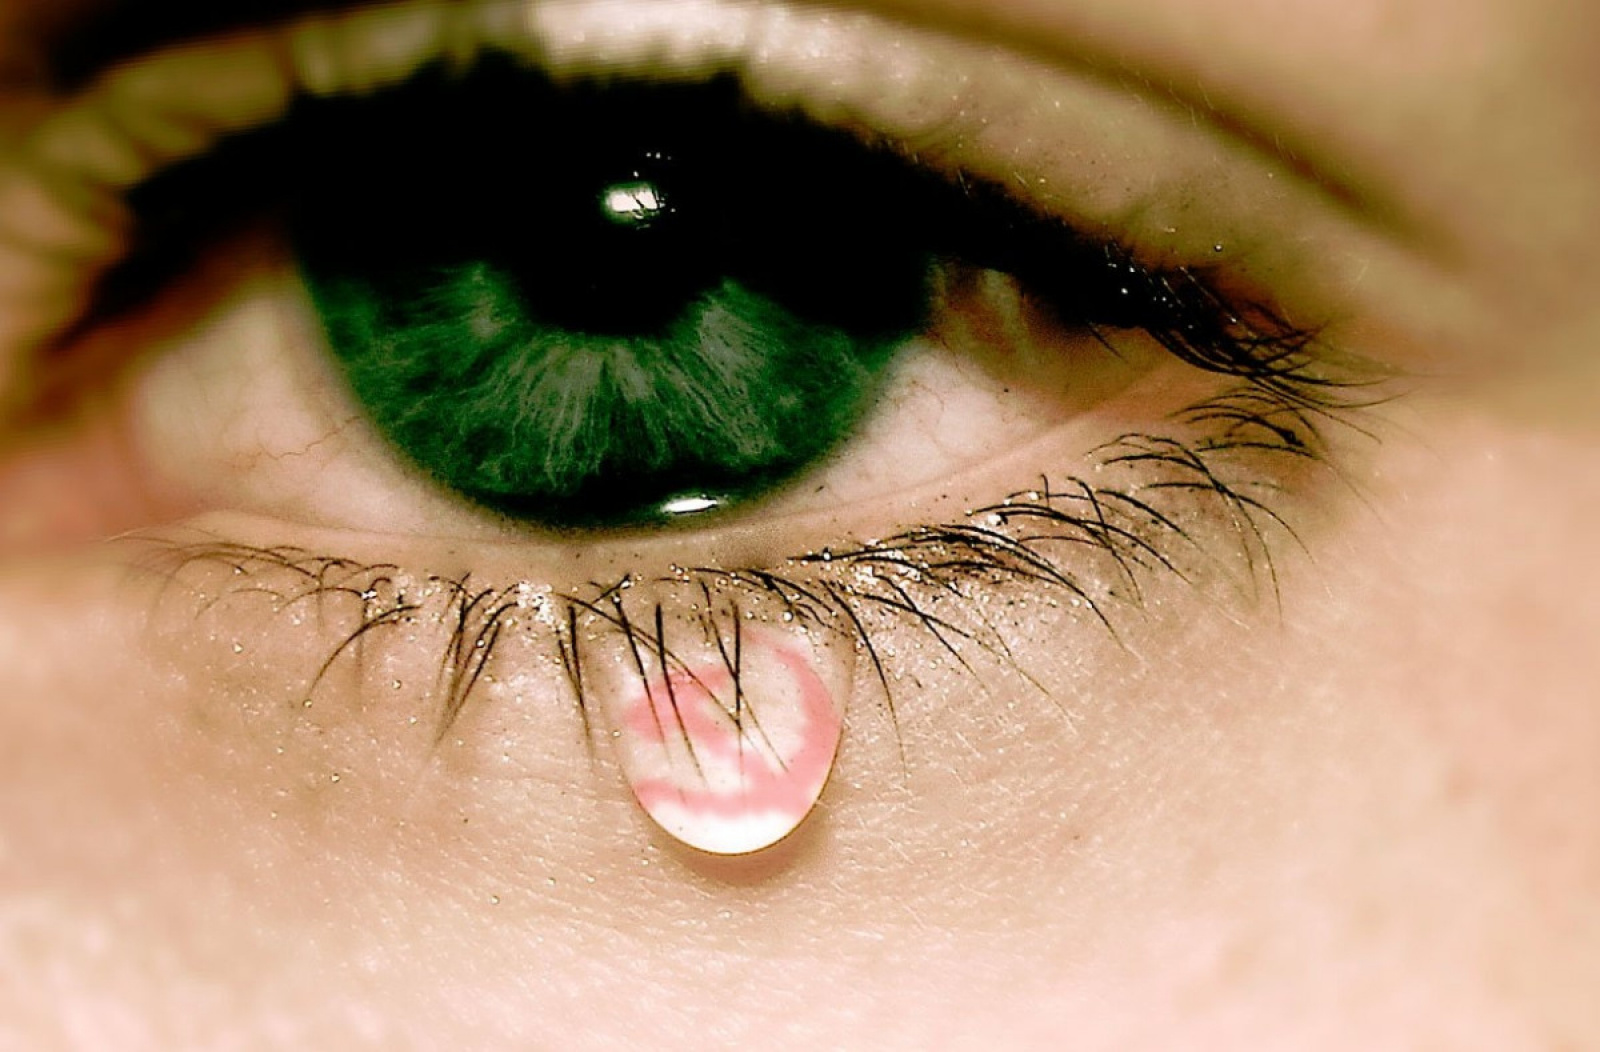 Сильная сильно текут слезы. Слезы. Заплаканные зелёные глаза. Глаз со слезой. Плачущие глаза.